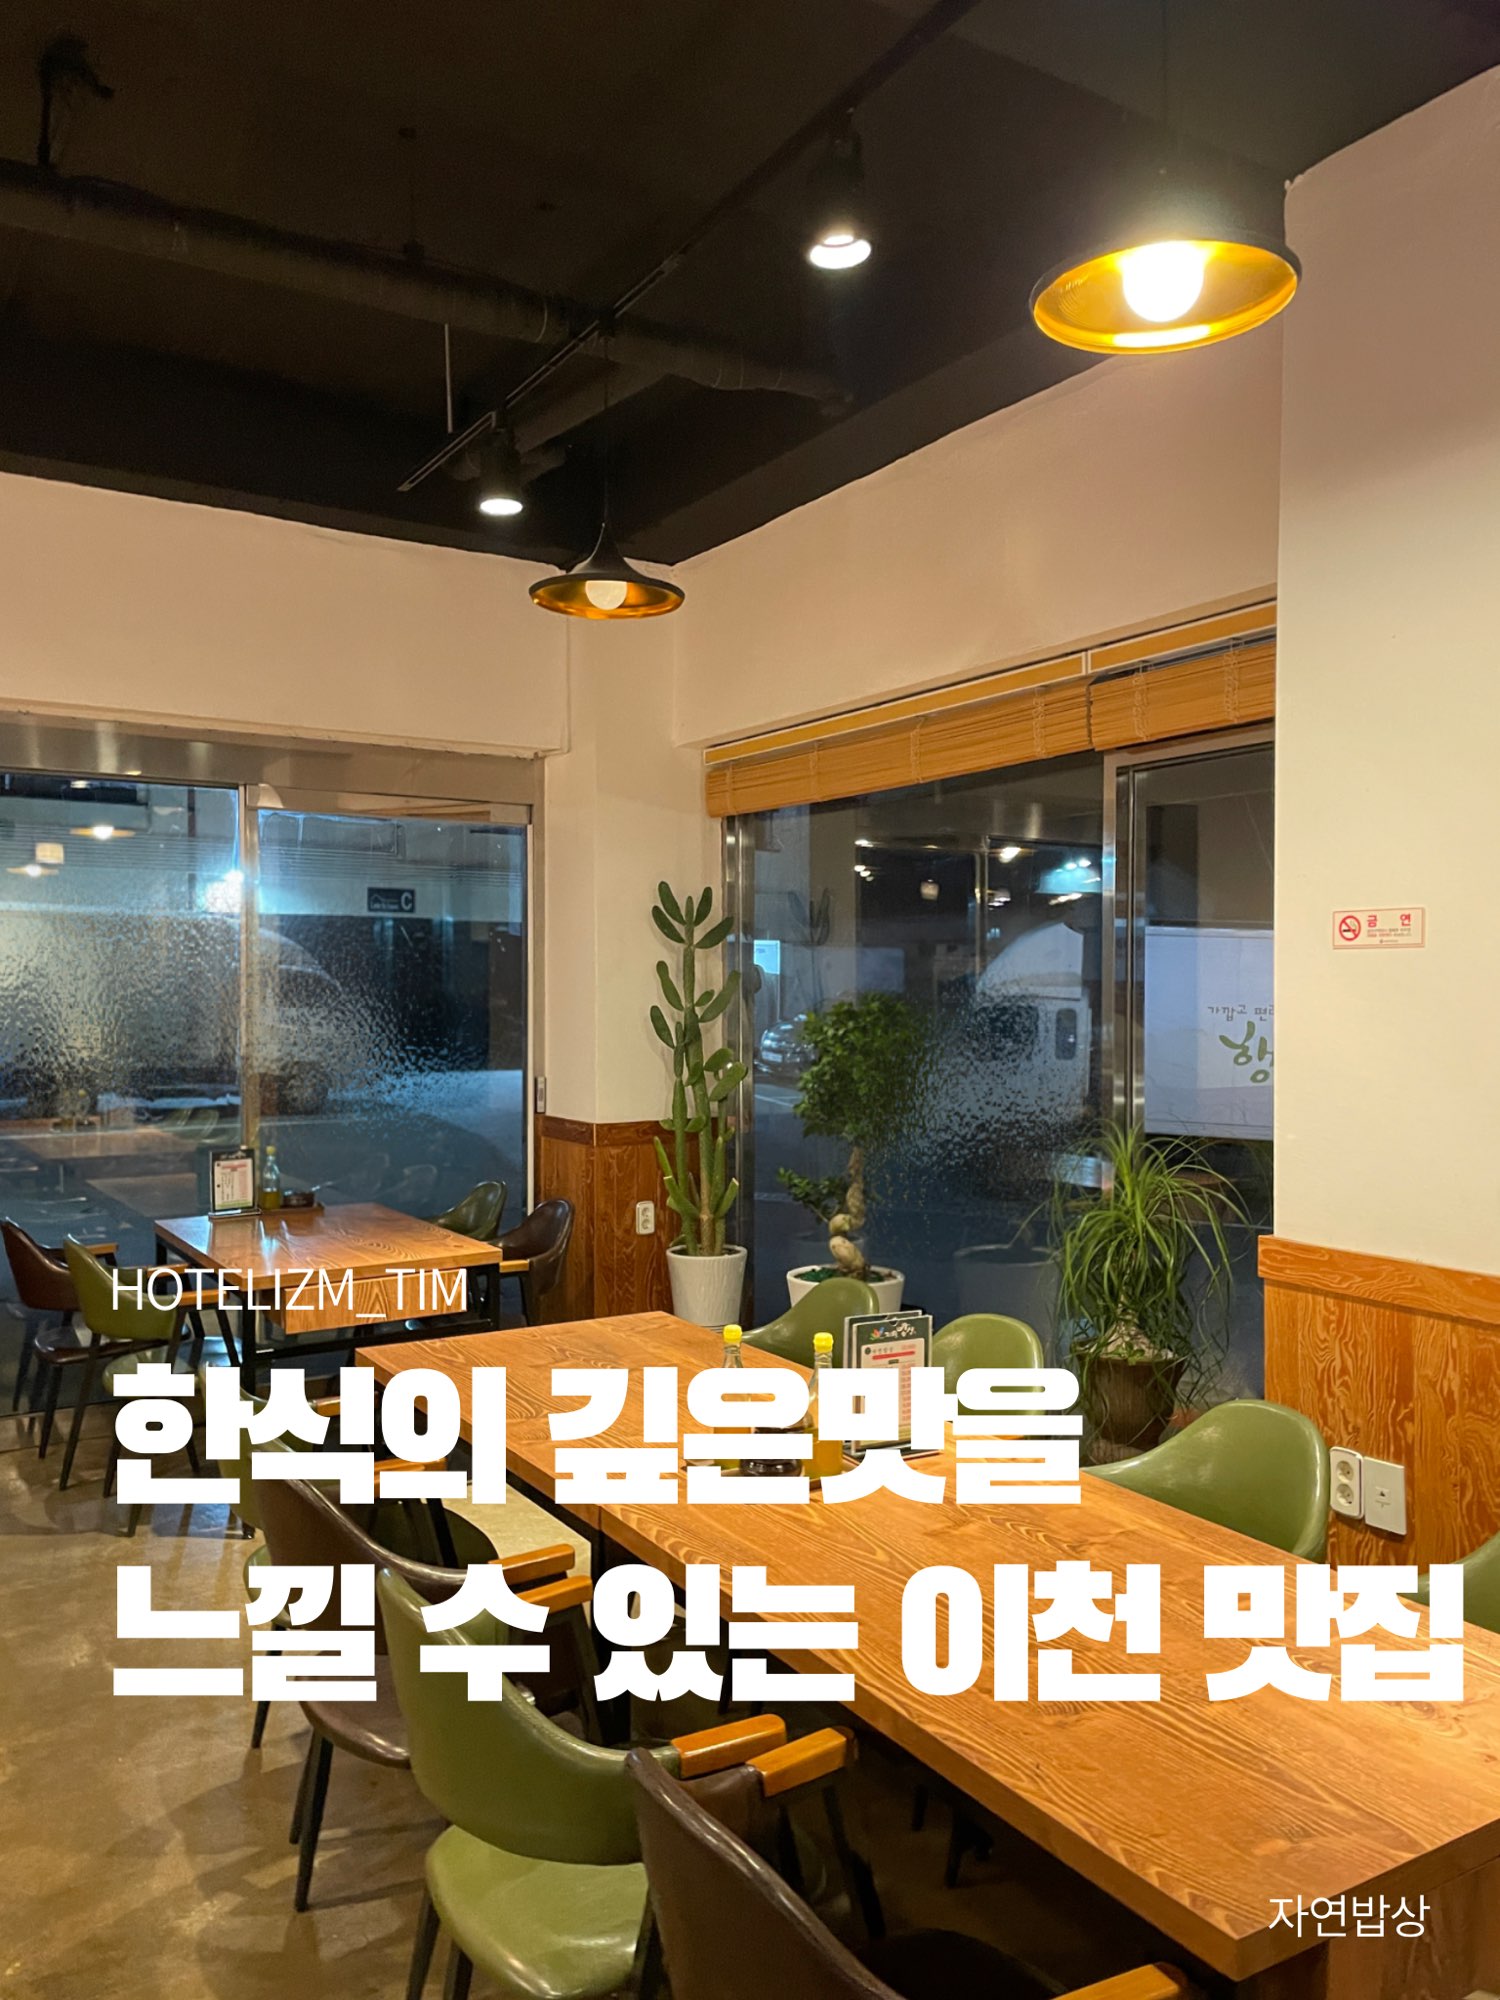 可以感受到韩国料理的深厚味道的李川美食店🍴